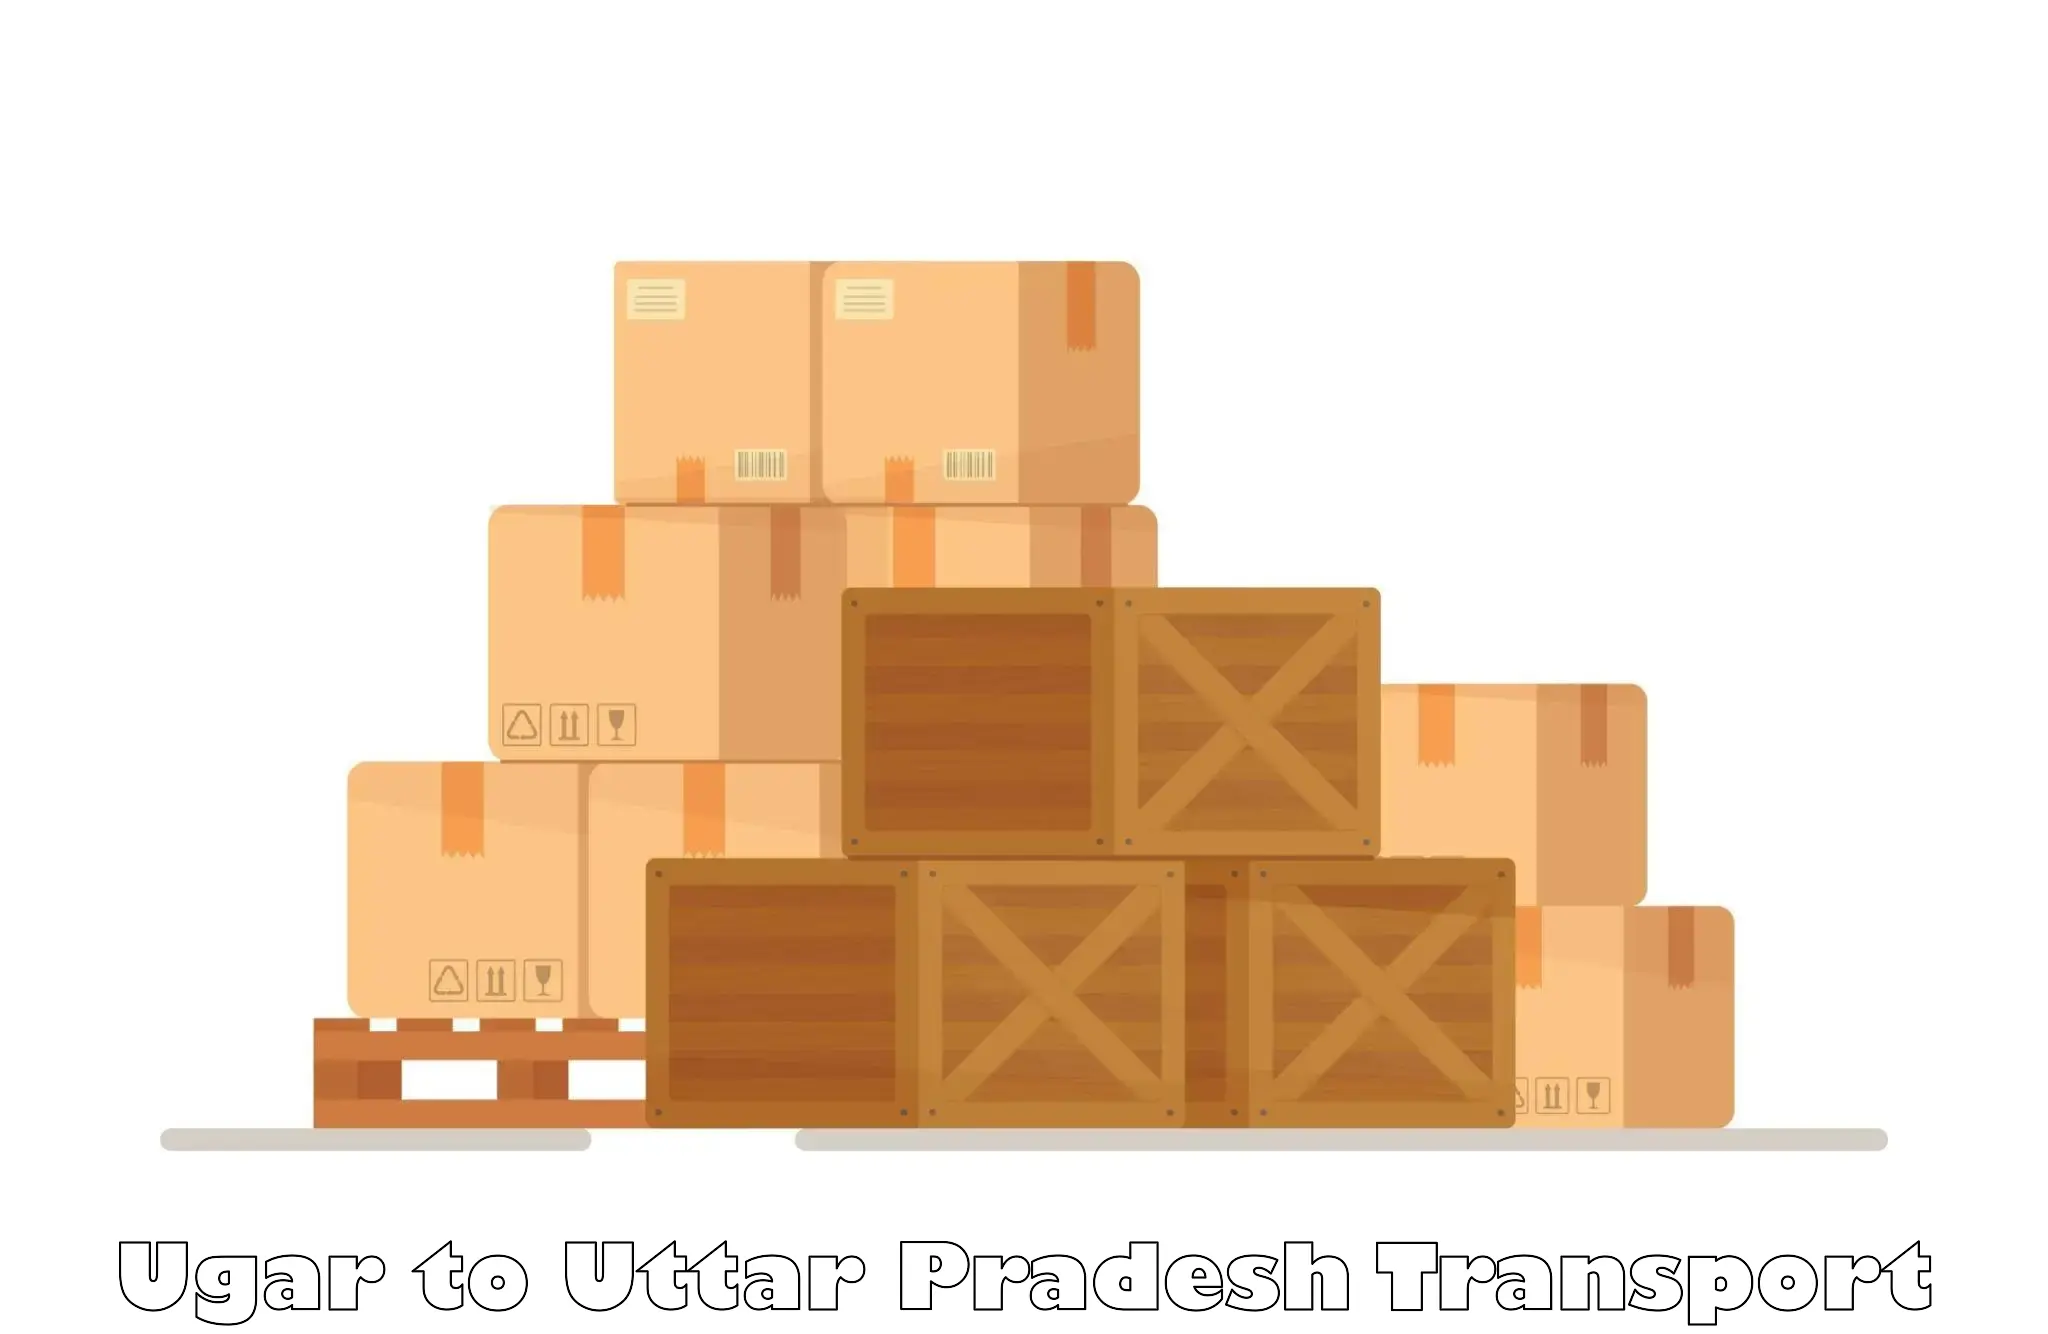 Shipping partner Ugar to Muskara